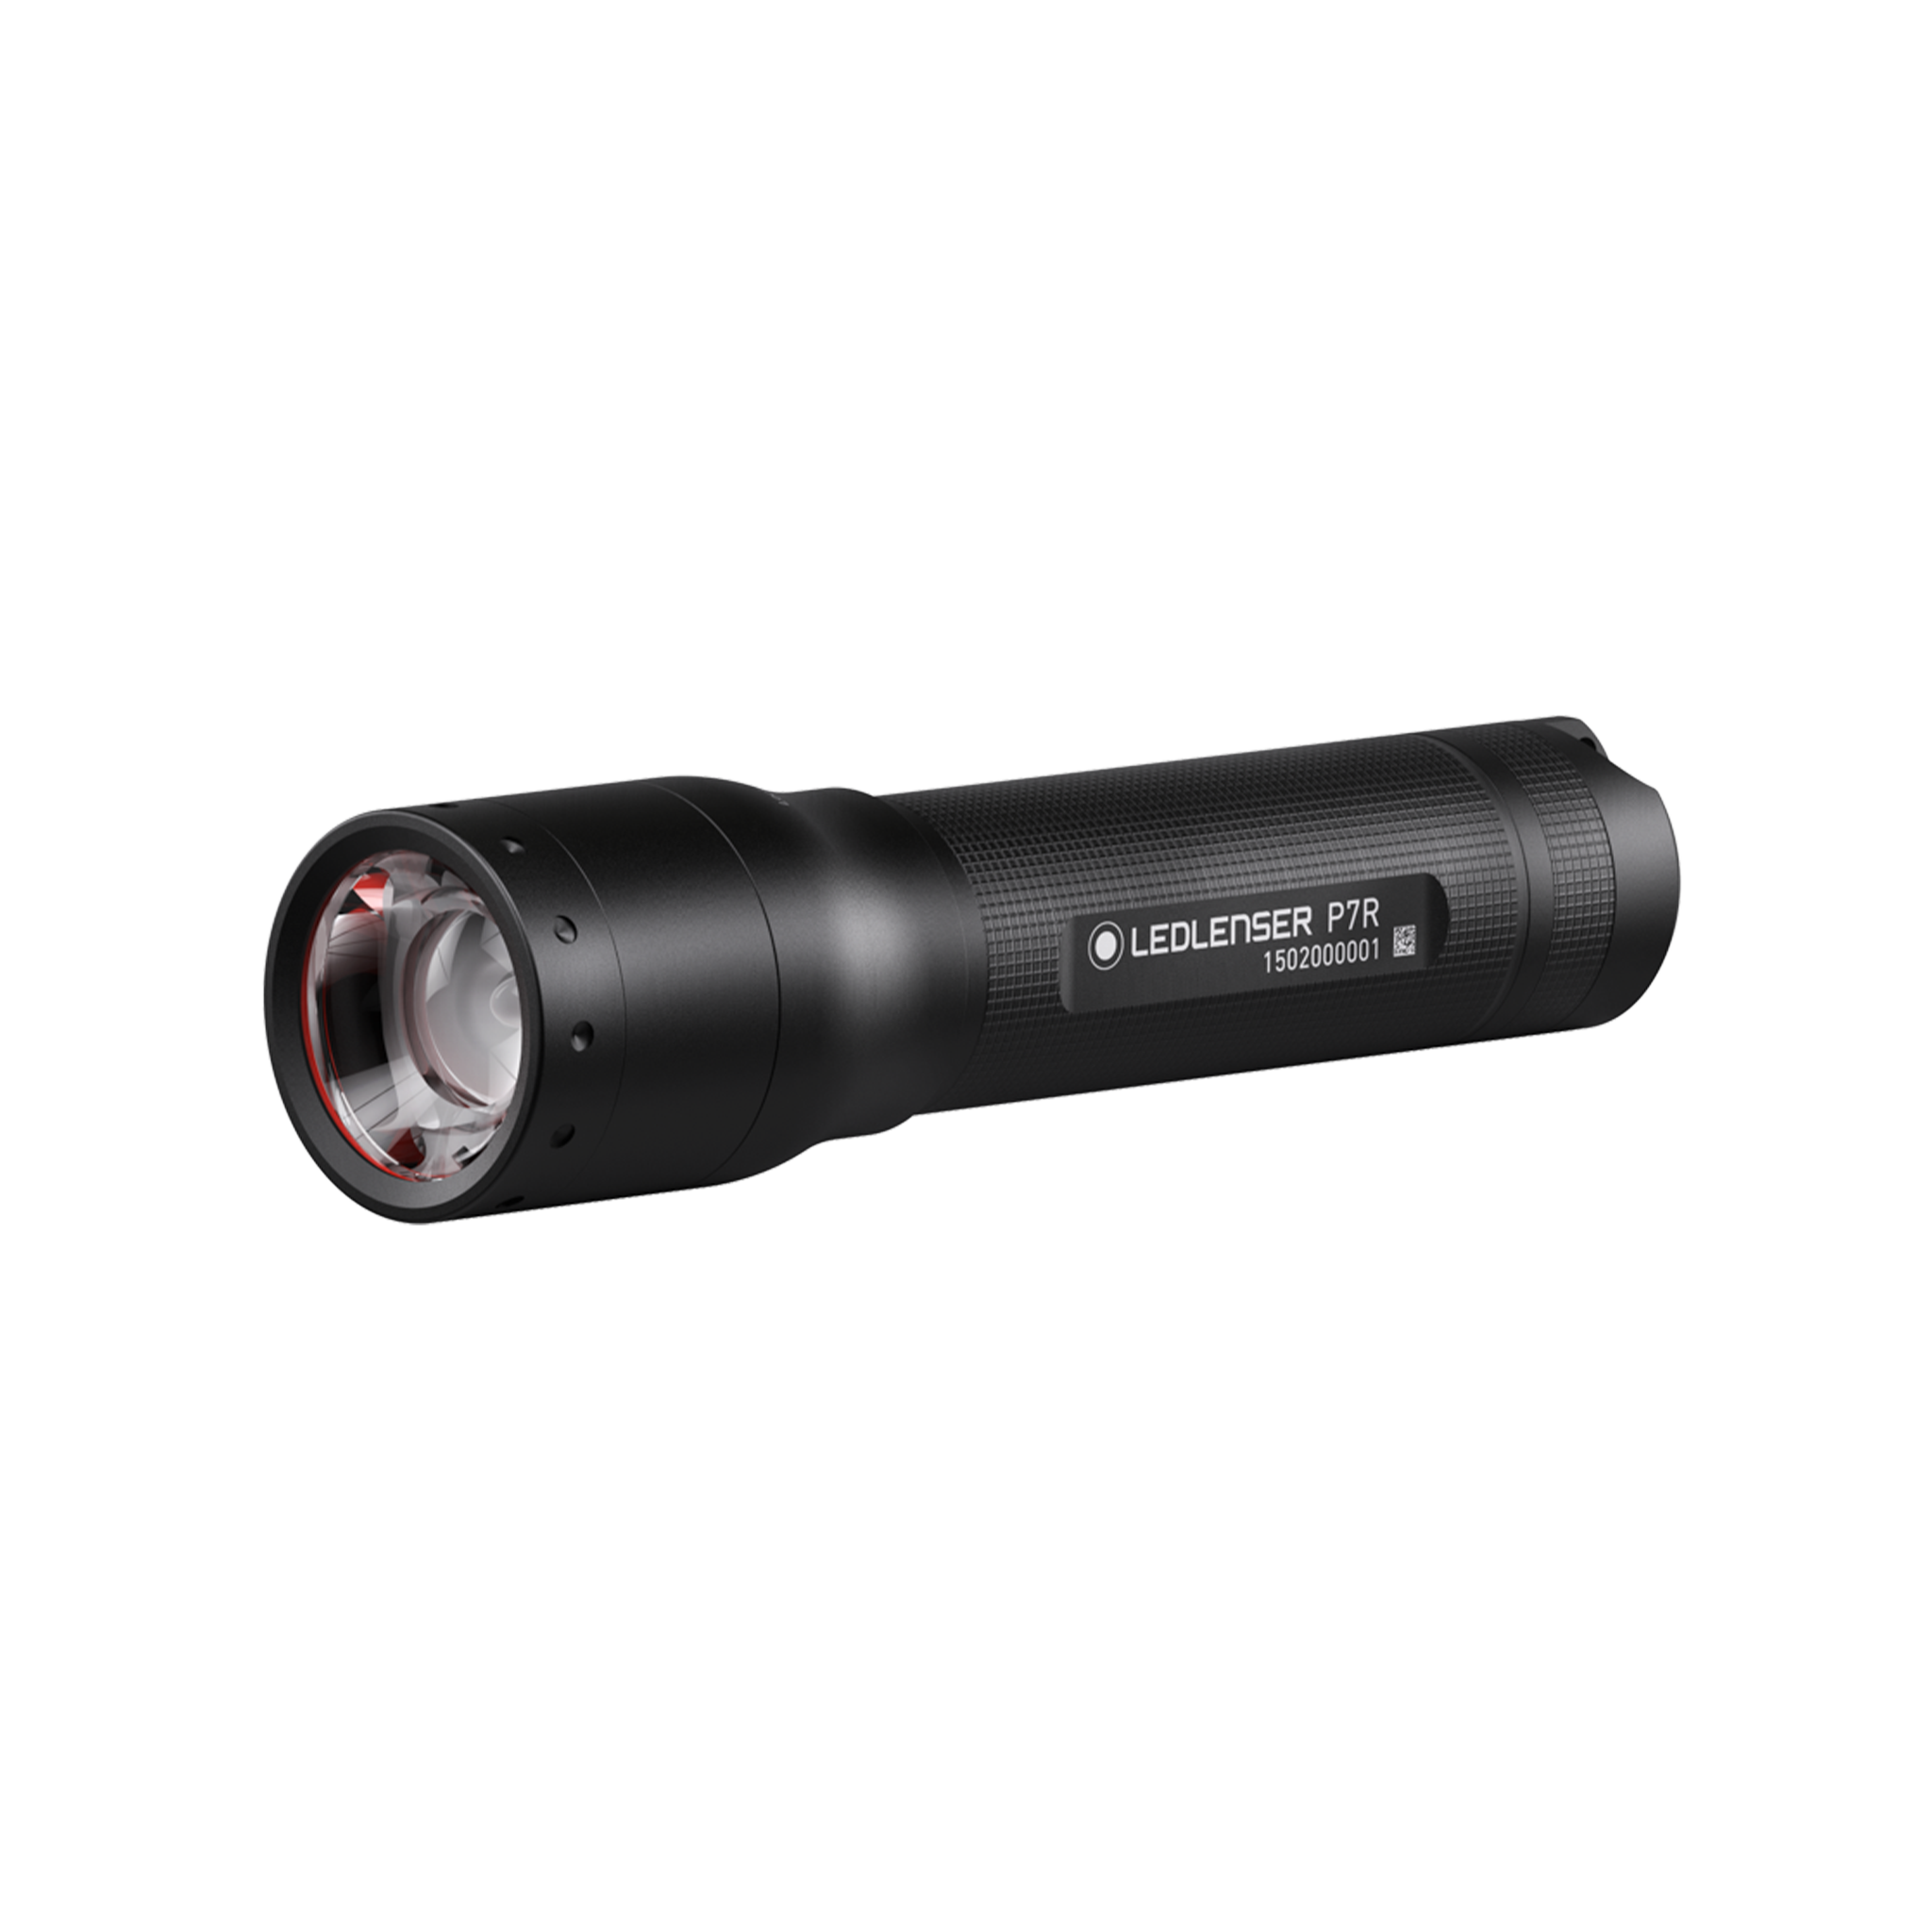 LED Lenser P7R Signature Flashlight Black